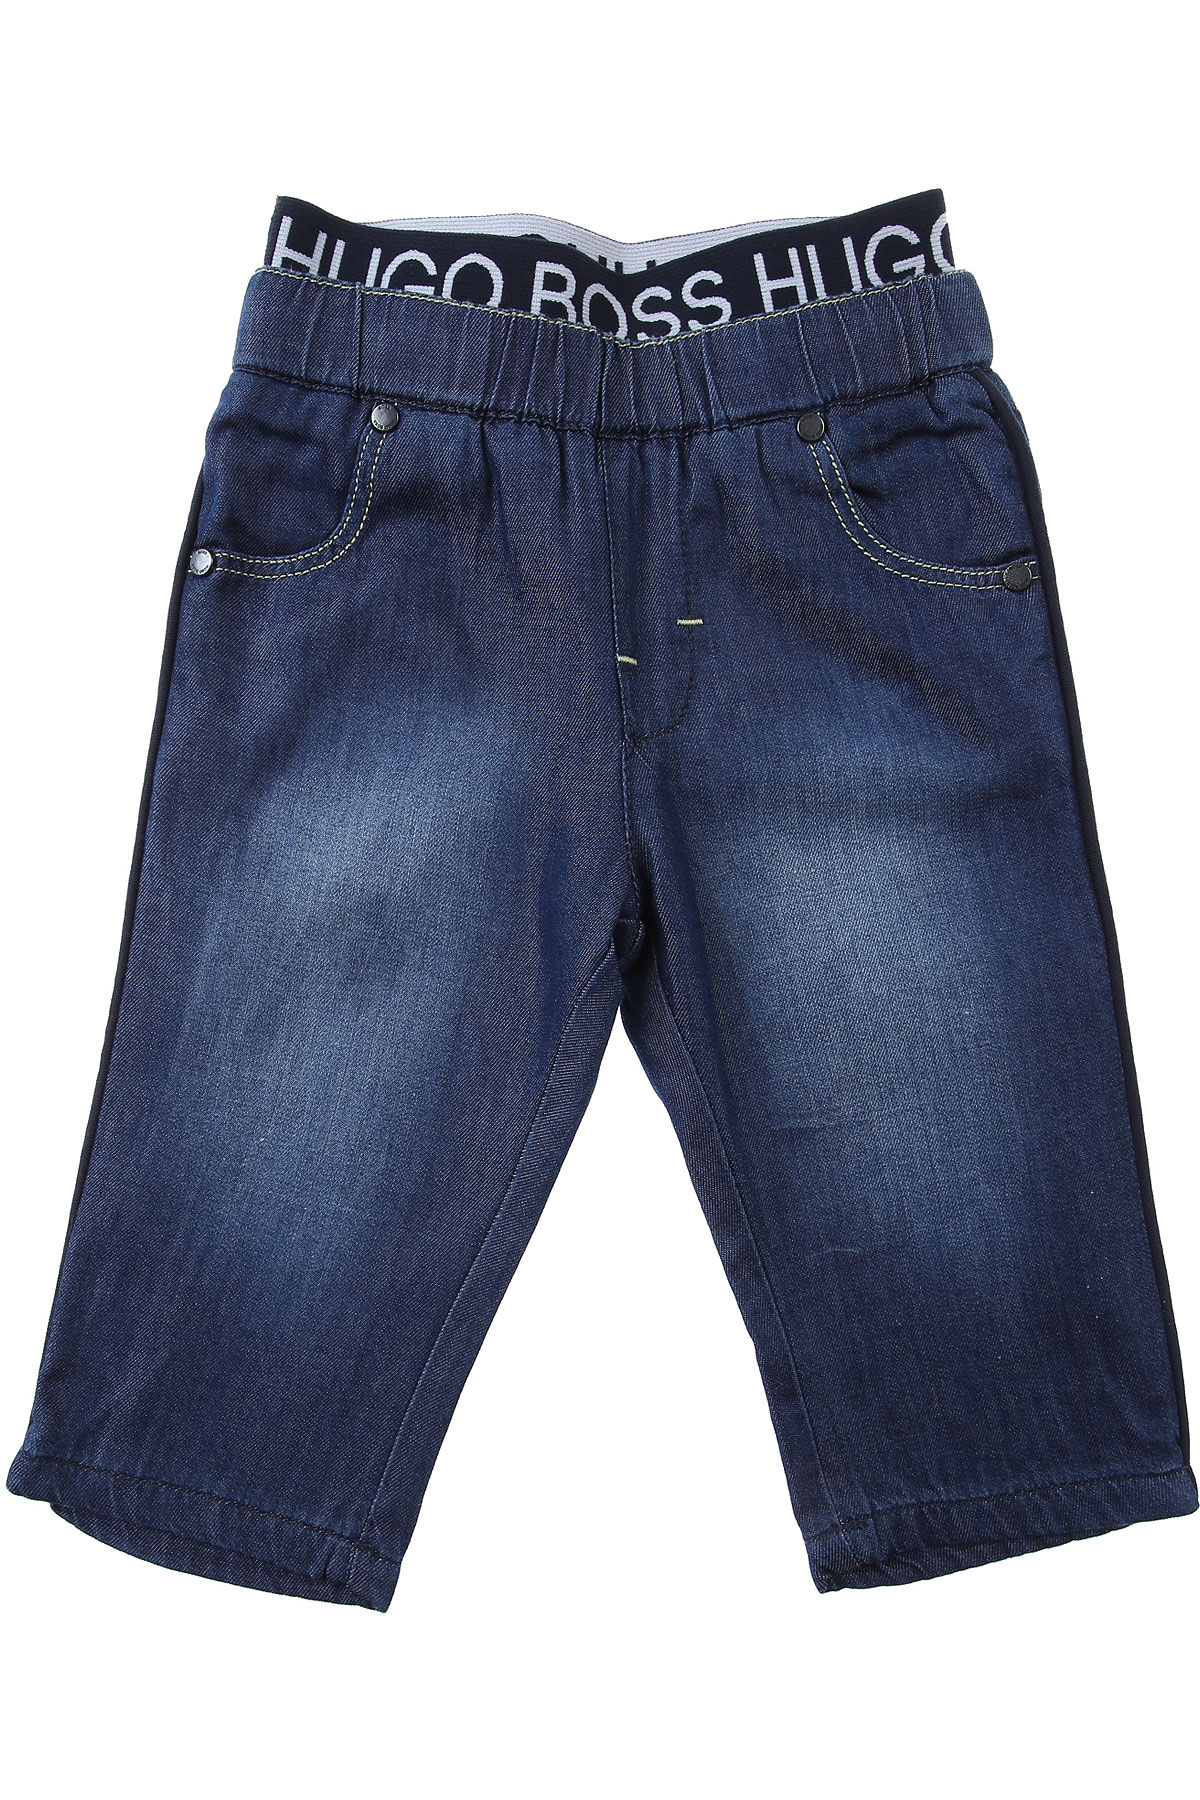 Hugo Boss Baby Jeans für Jungen Günstig im Sale, Denim- Blau, Baumwolle, 2017, 12 M 18 M 3M 6M 9 M